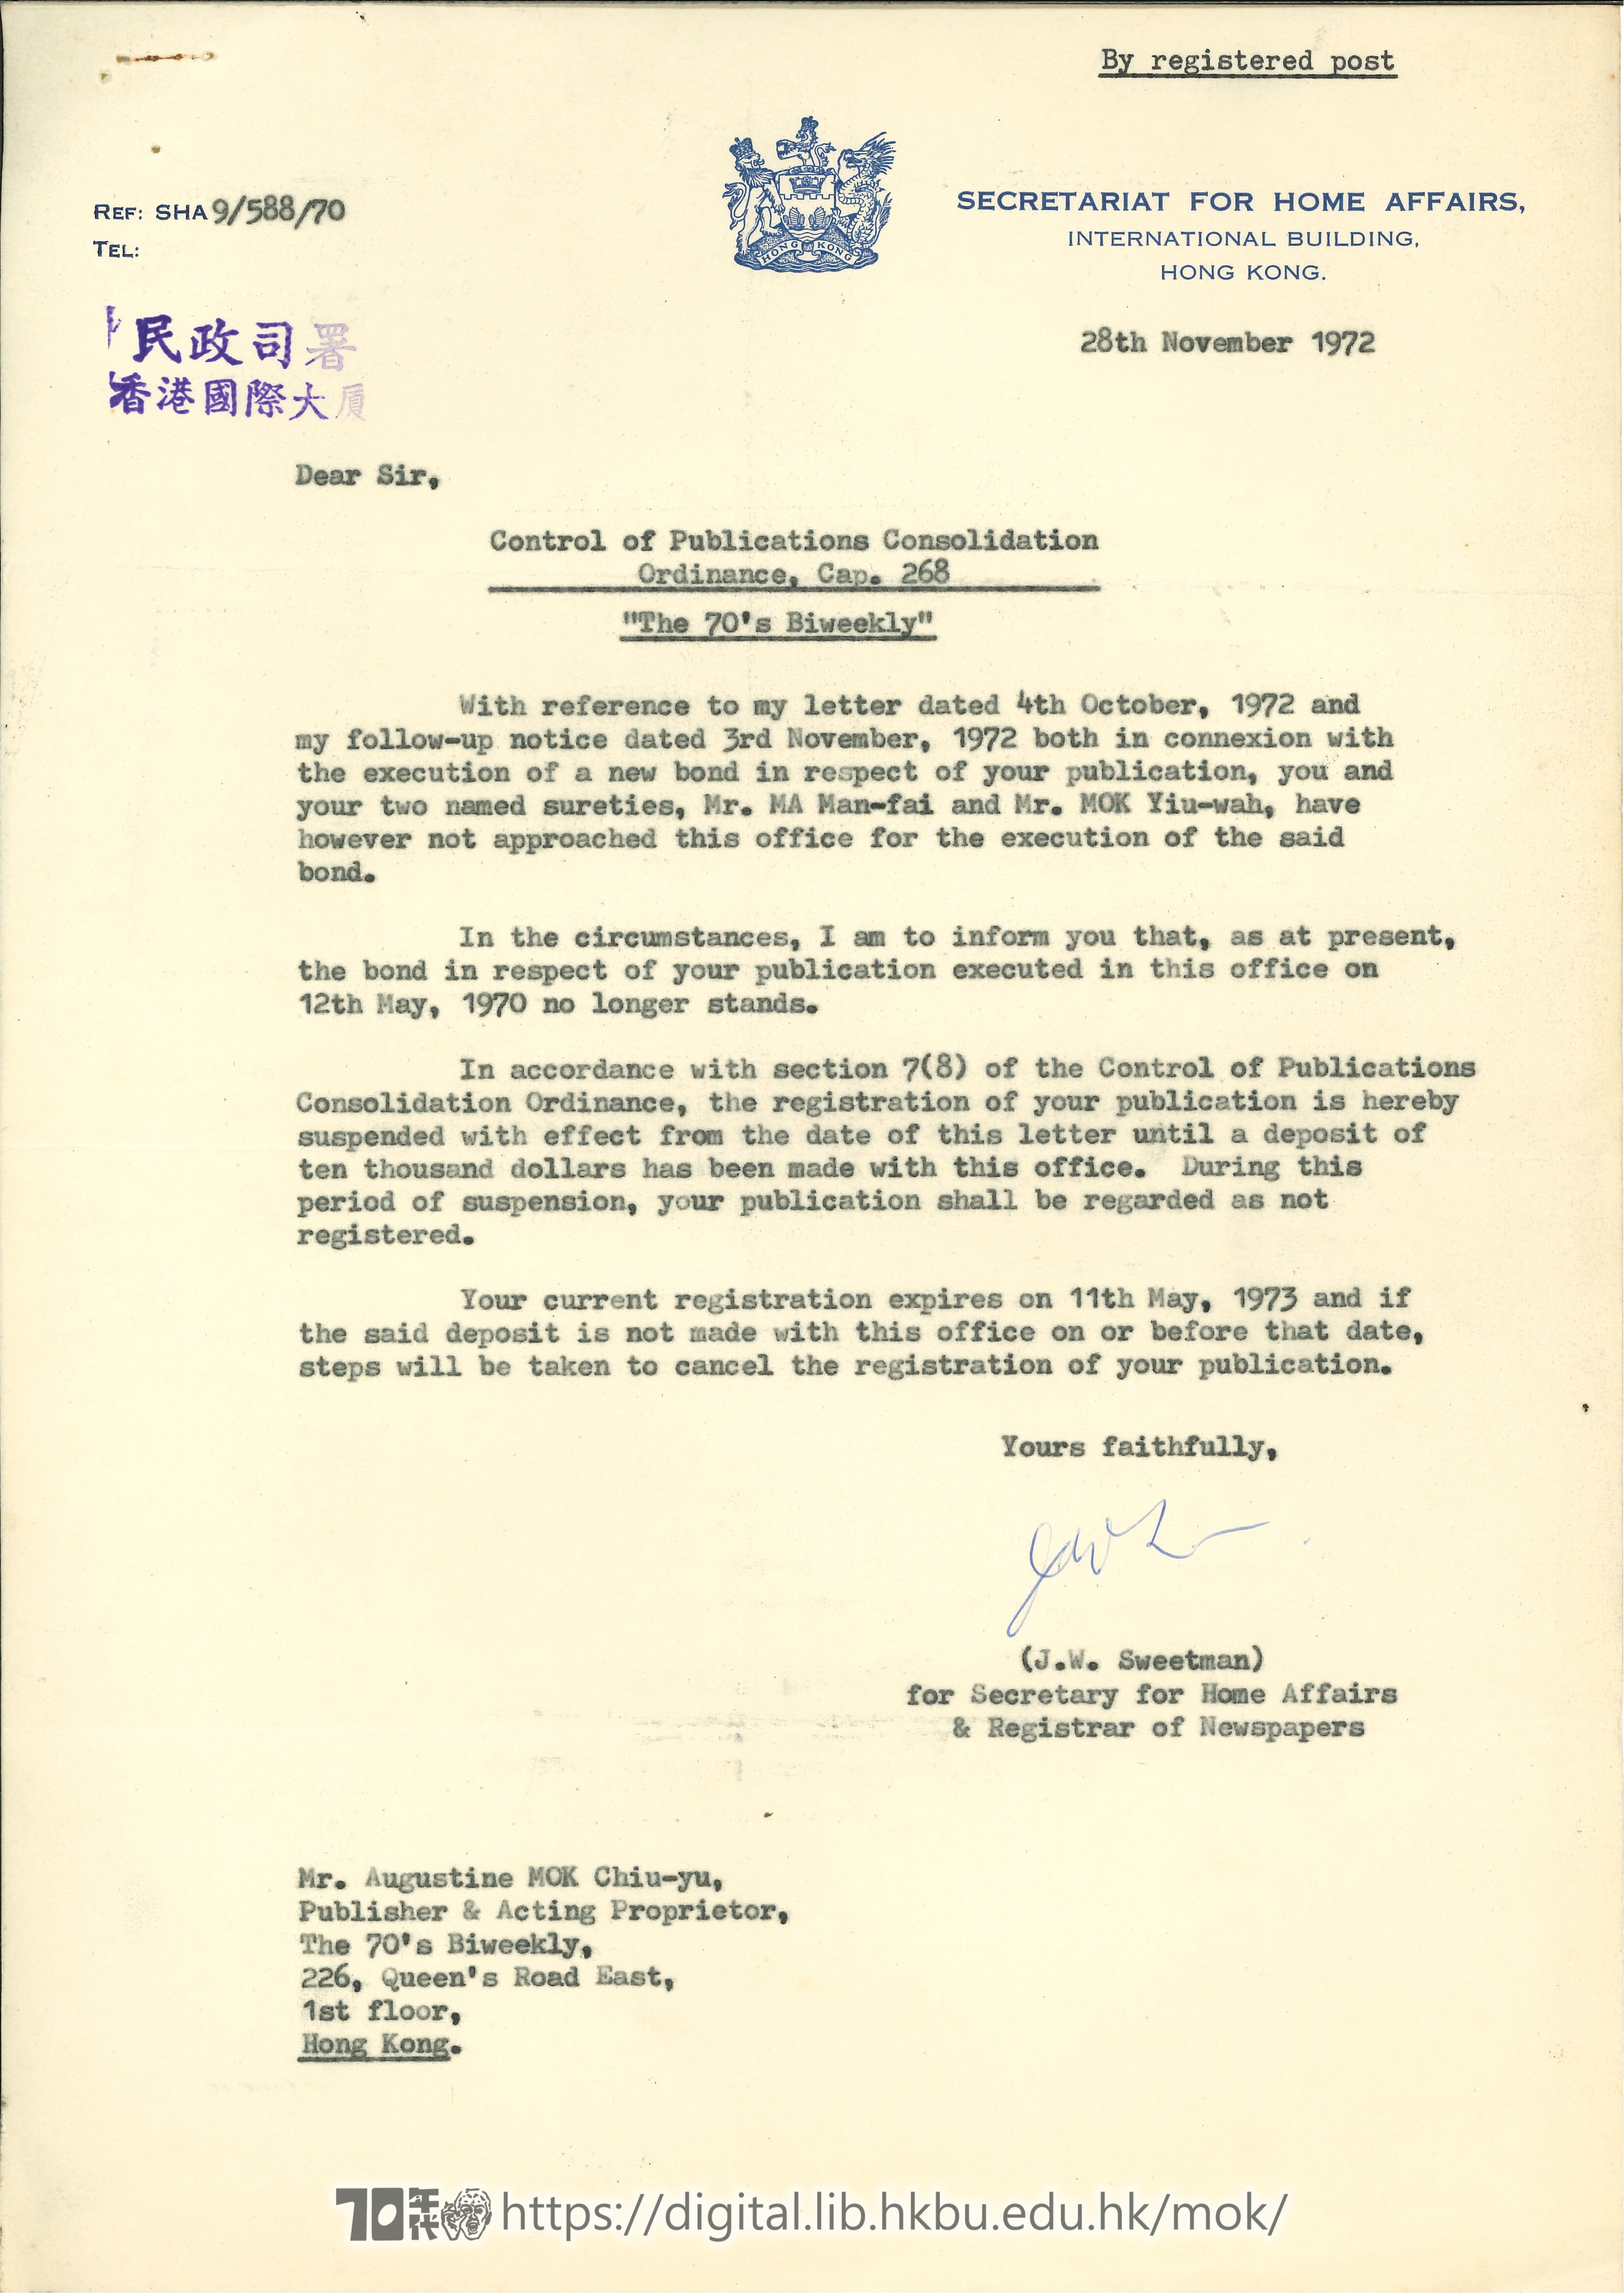   Letter from J.W. Sweetman to Mok Chiu Yu SWEETMAN, J.W. 